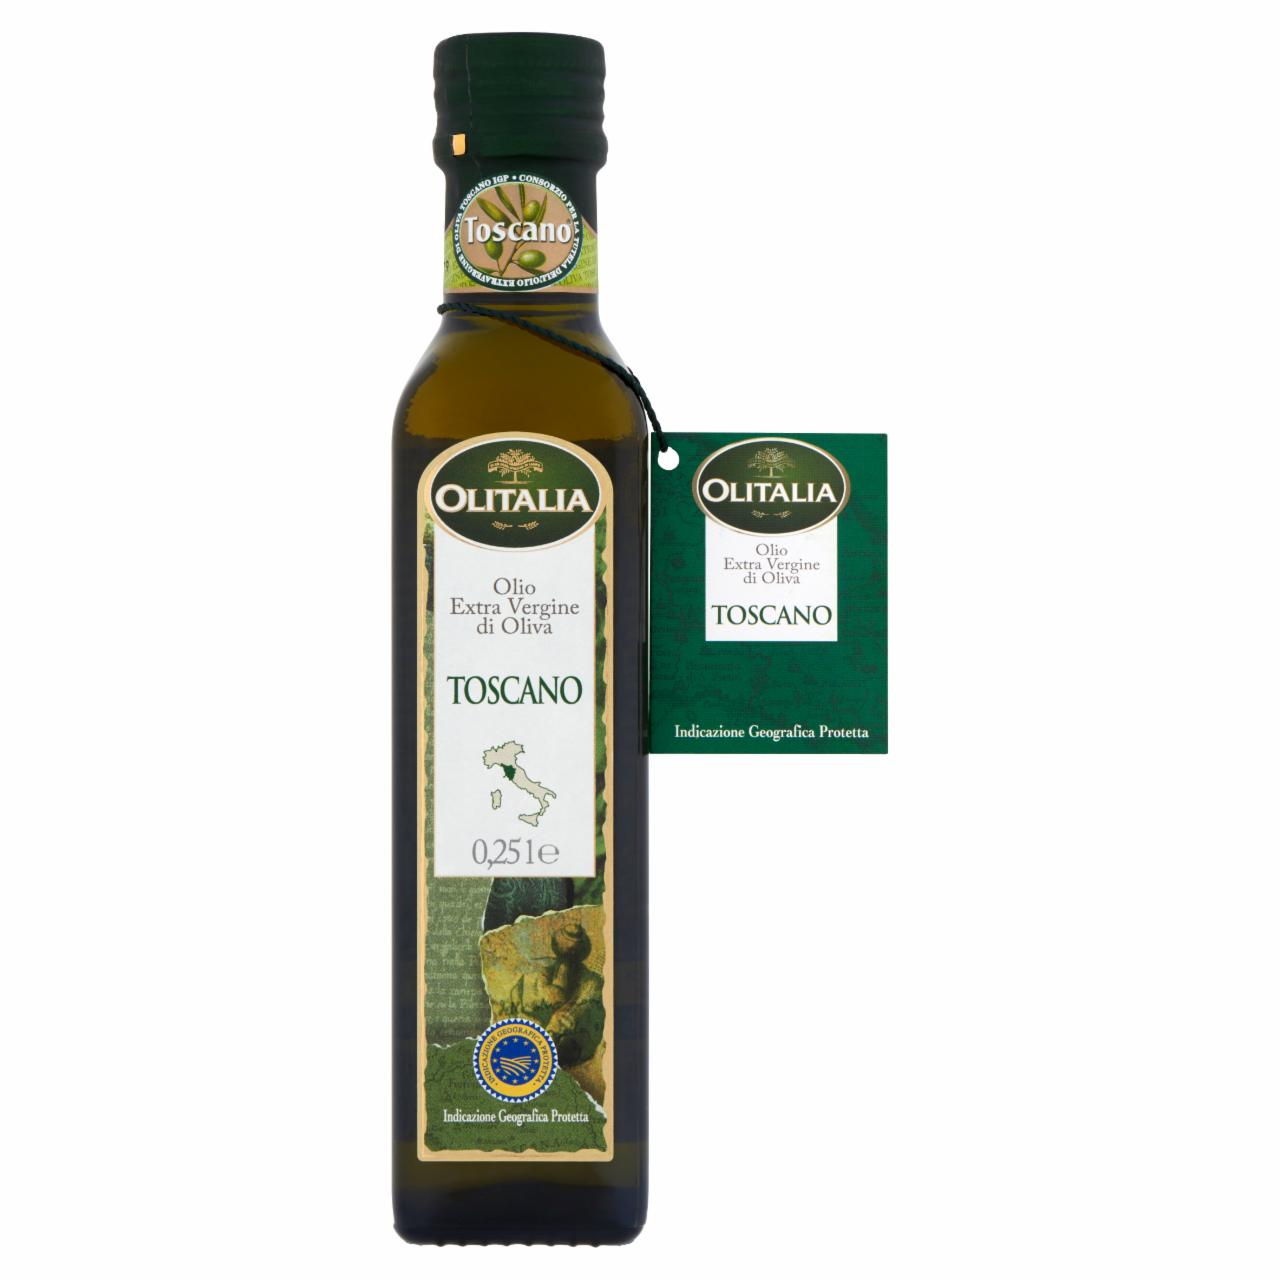 Képek - Olitalia Toscano extra szűz olívaolaj 250 ml